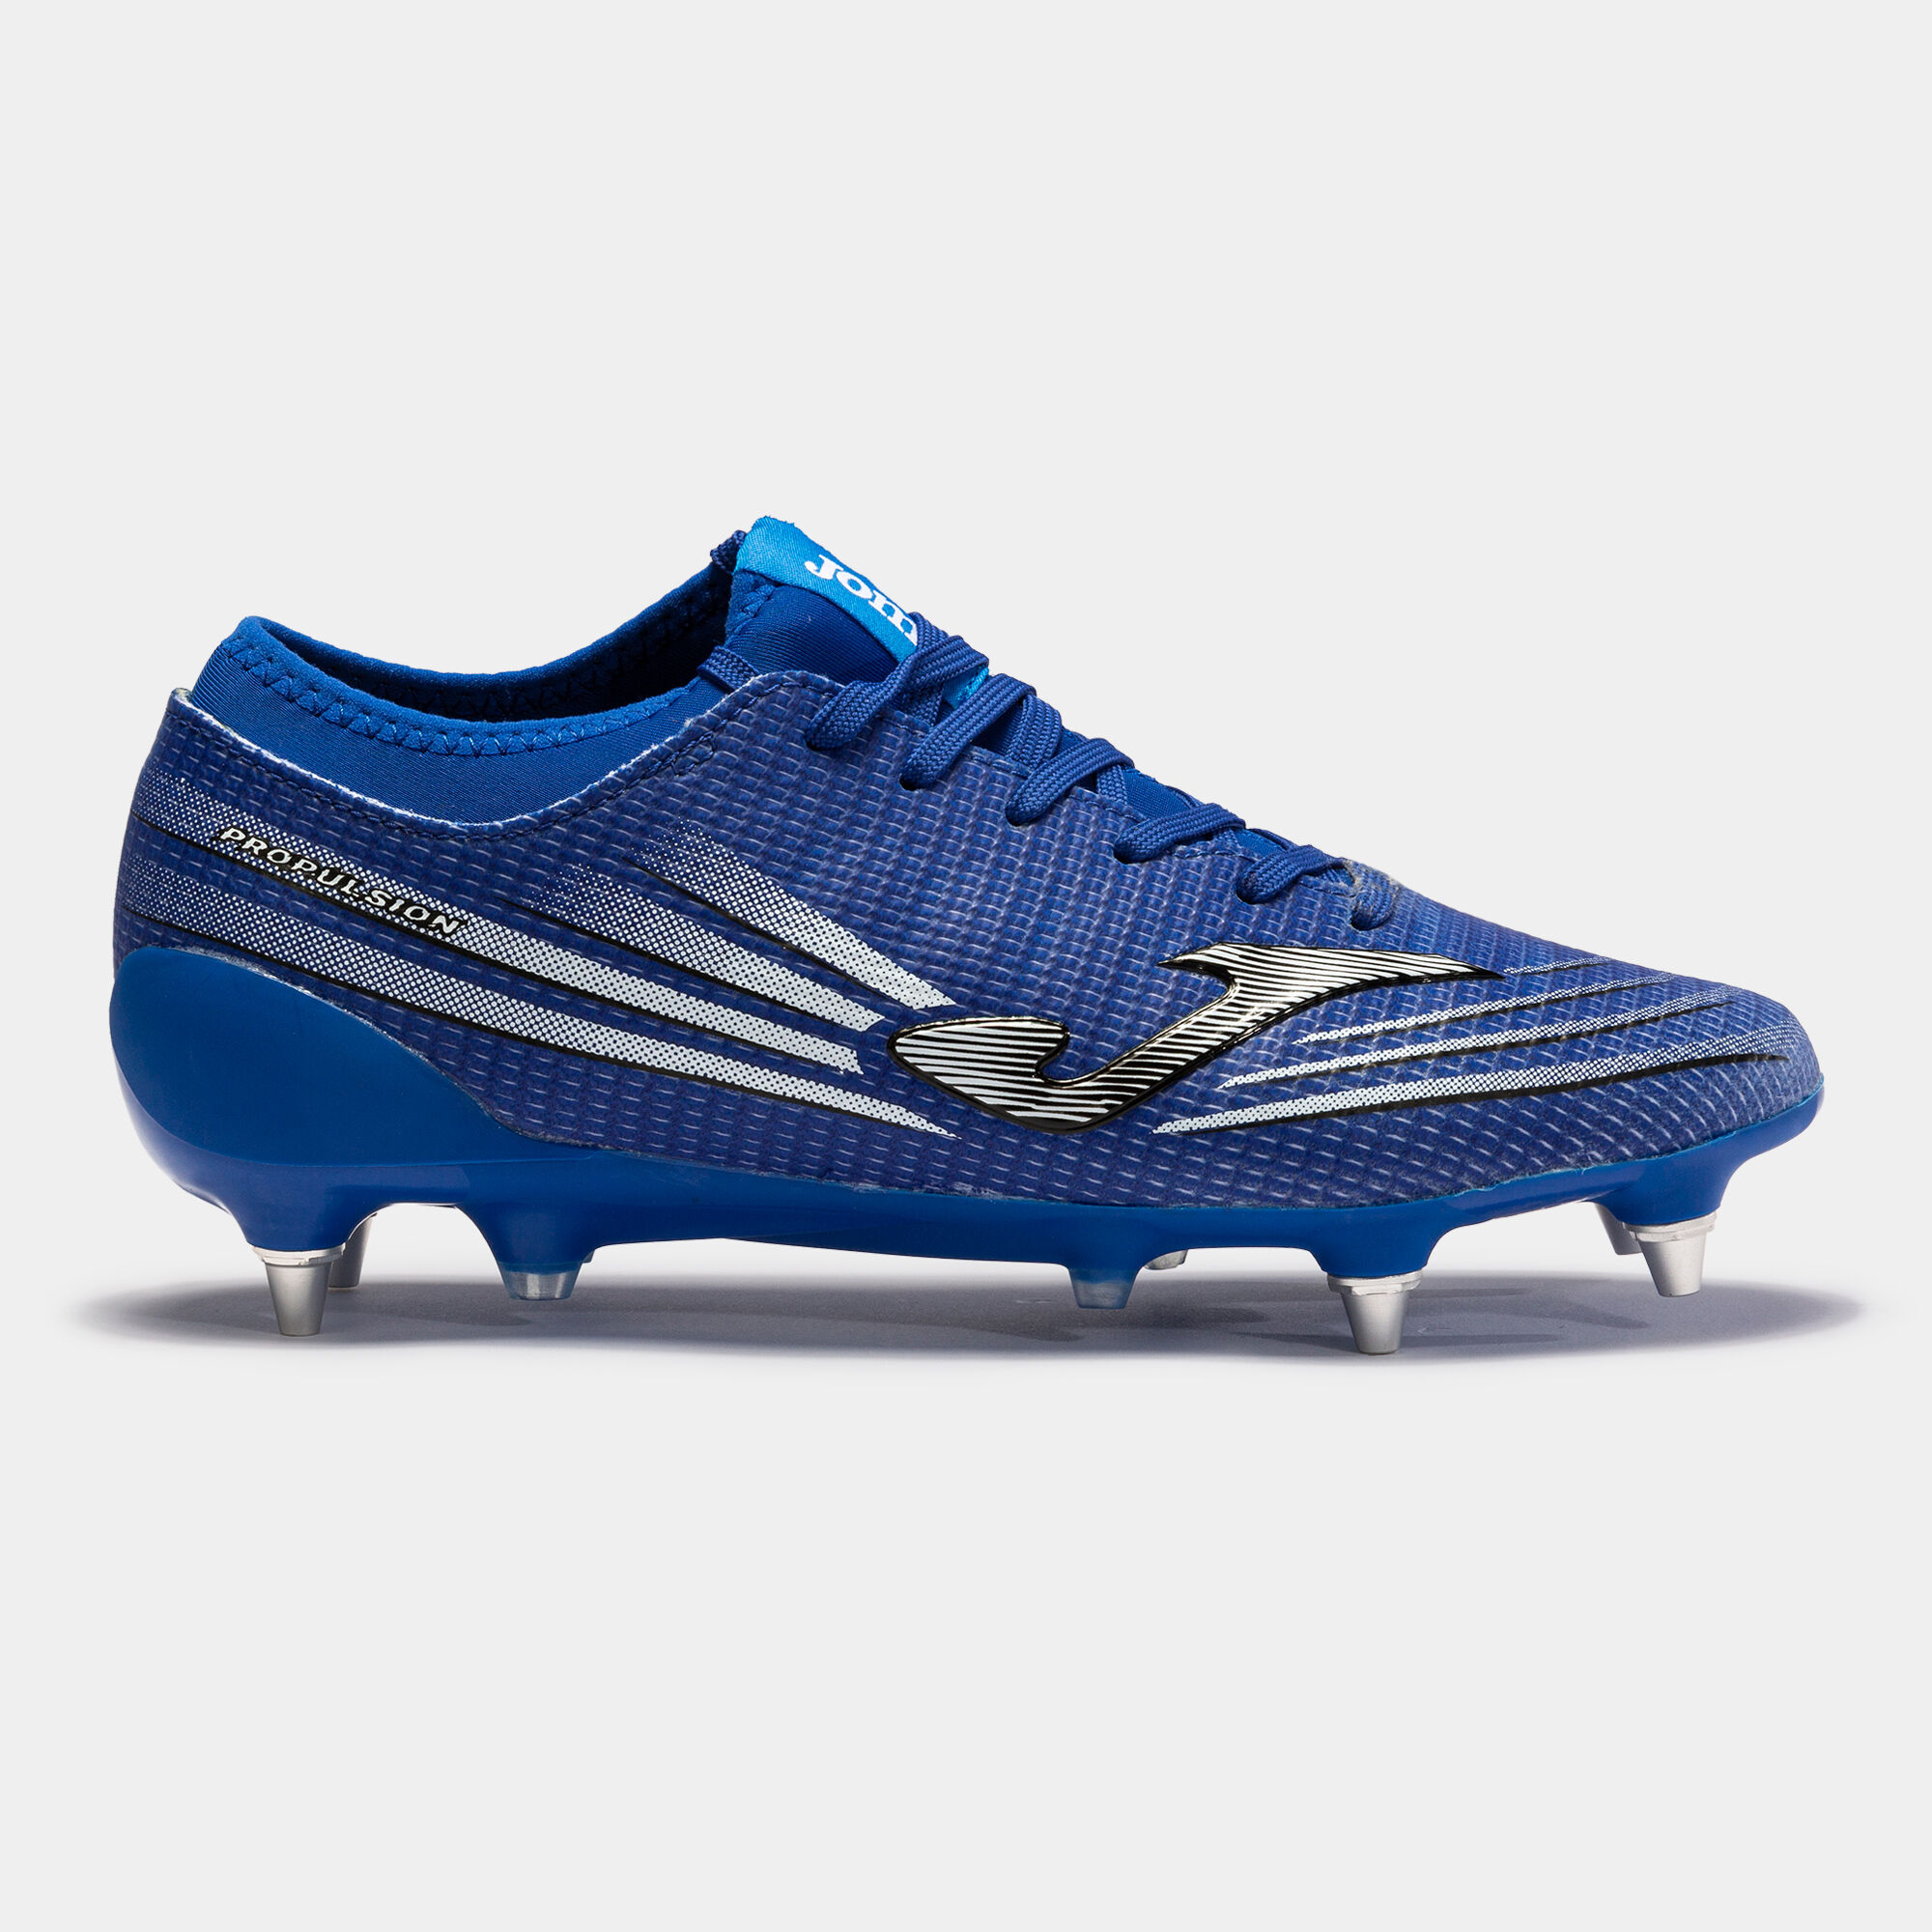 Buty piłkarskie Propulsion Lite 21 miękkie podłoże SG niebieski royal